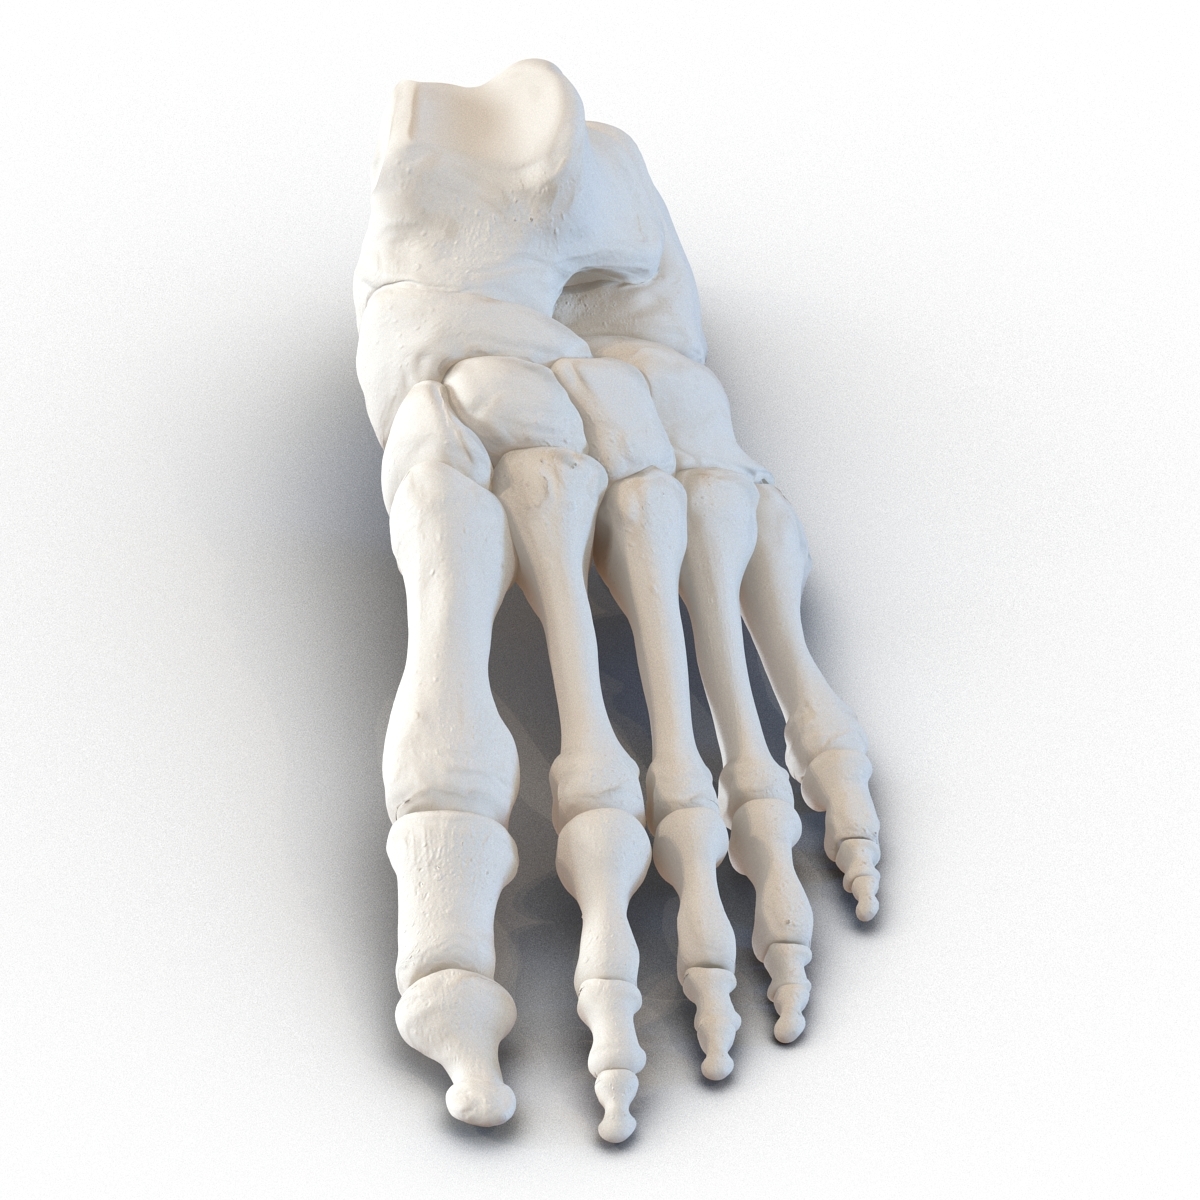 human foot bones 3d model